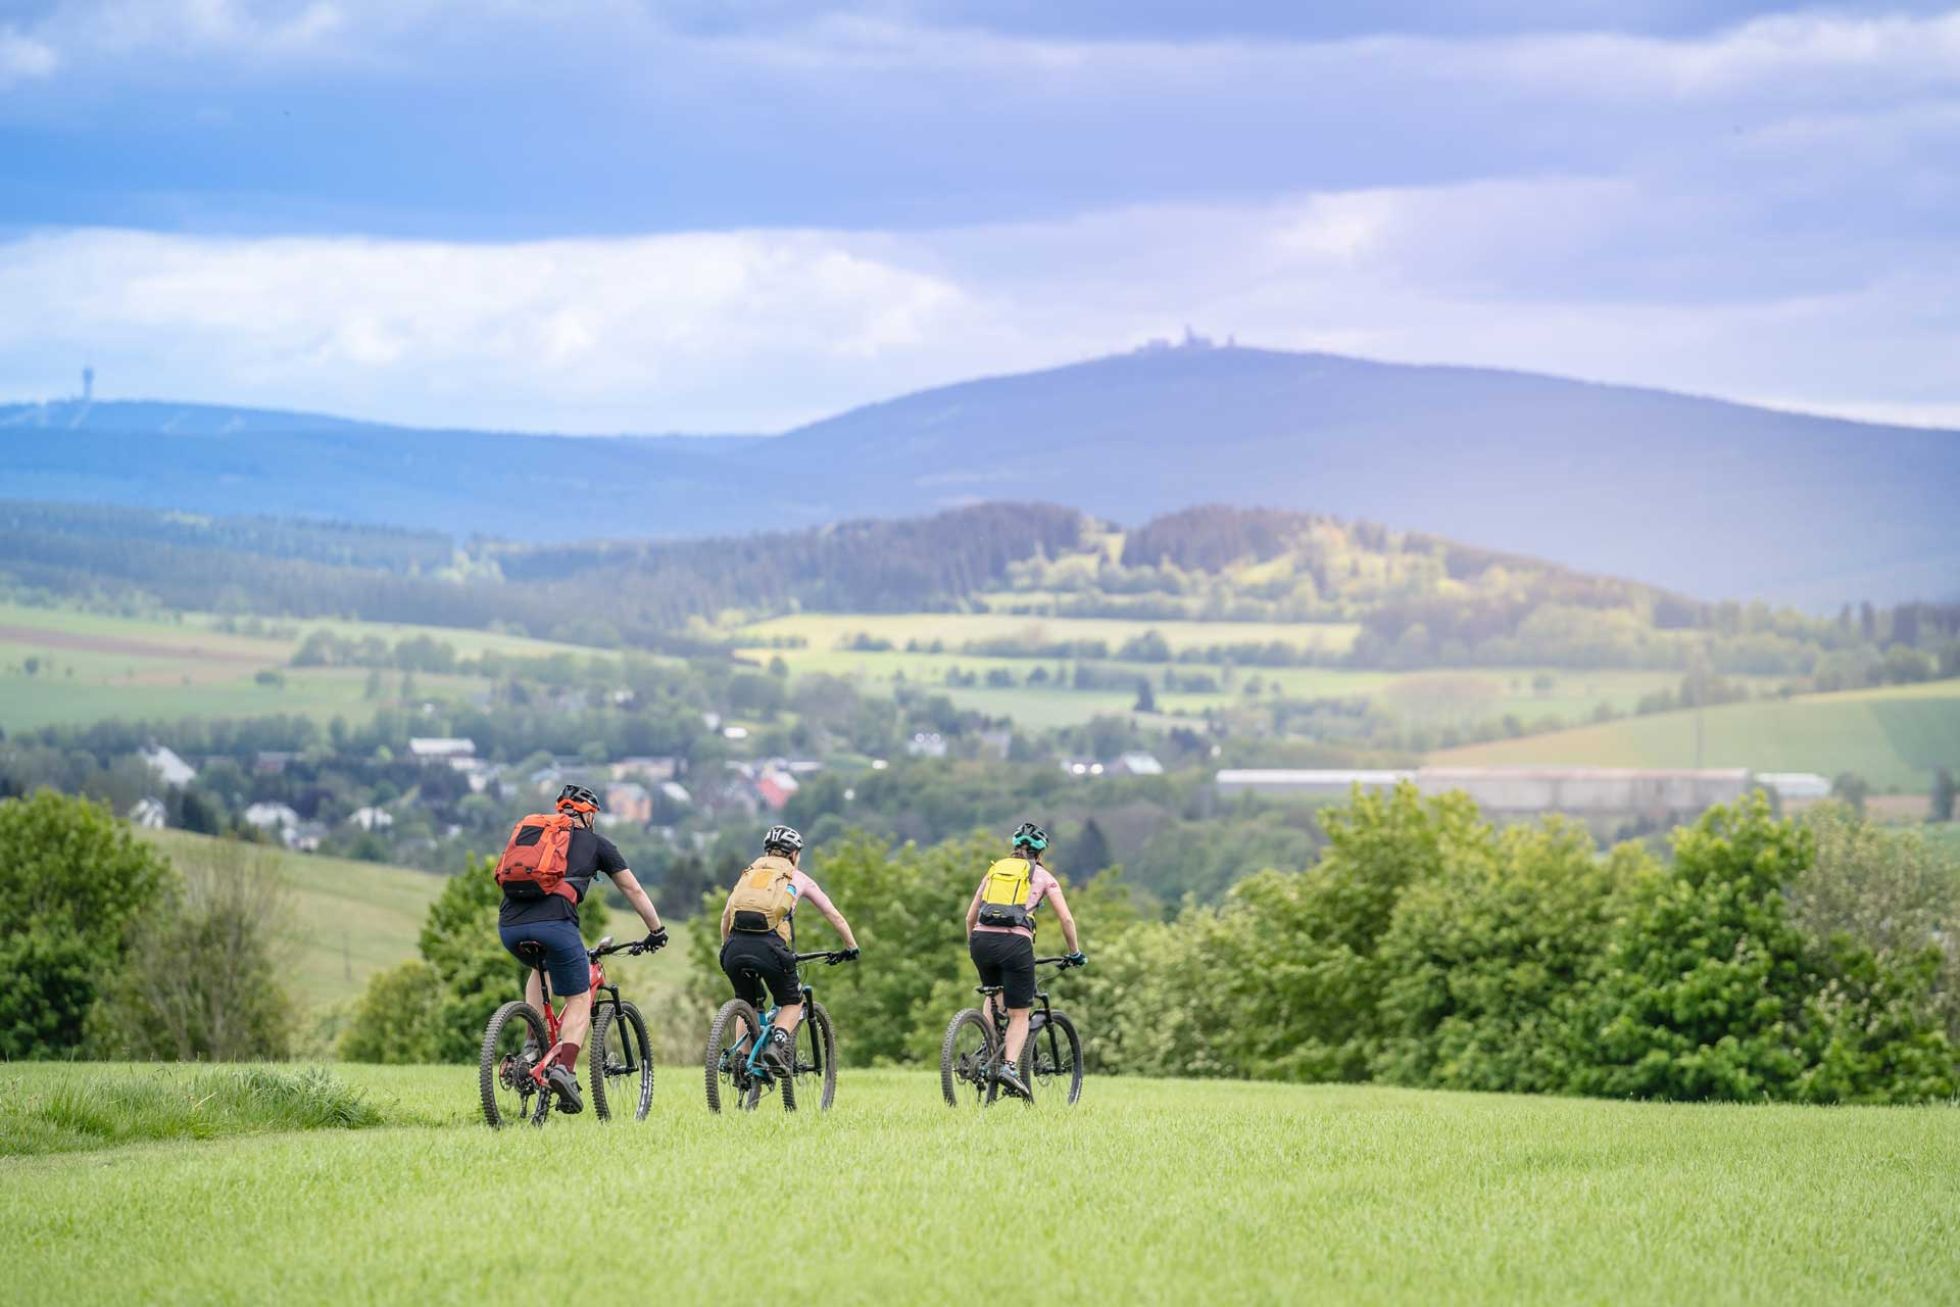 Totale der Landschaft mit 3 Fahrradfahrern